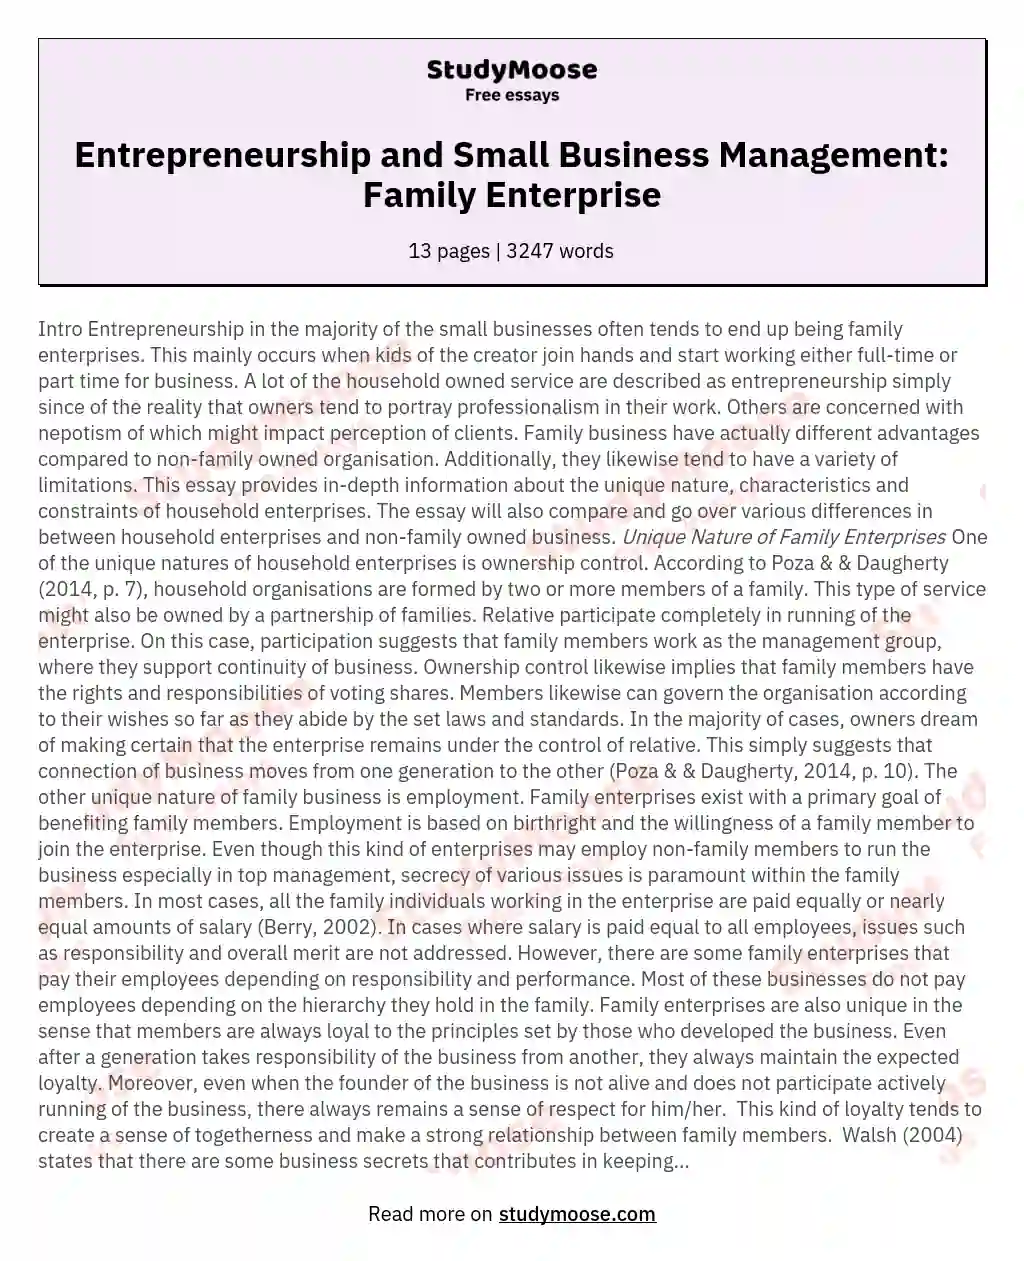 Entrepreneurship and Small Business Management: Family Enterprise